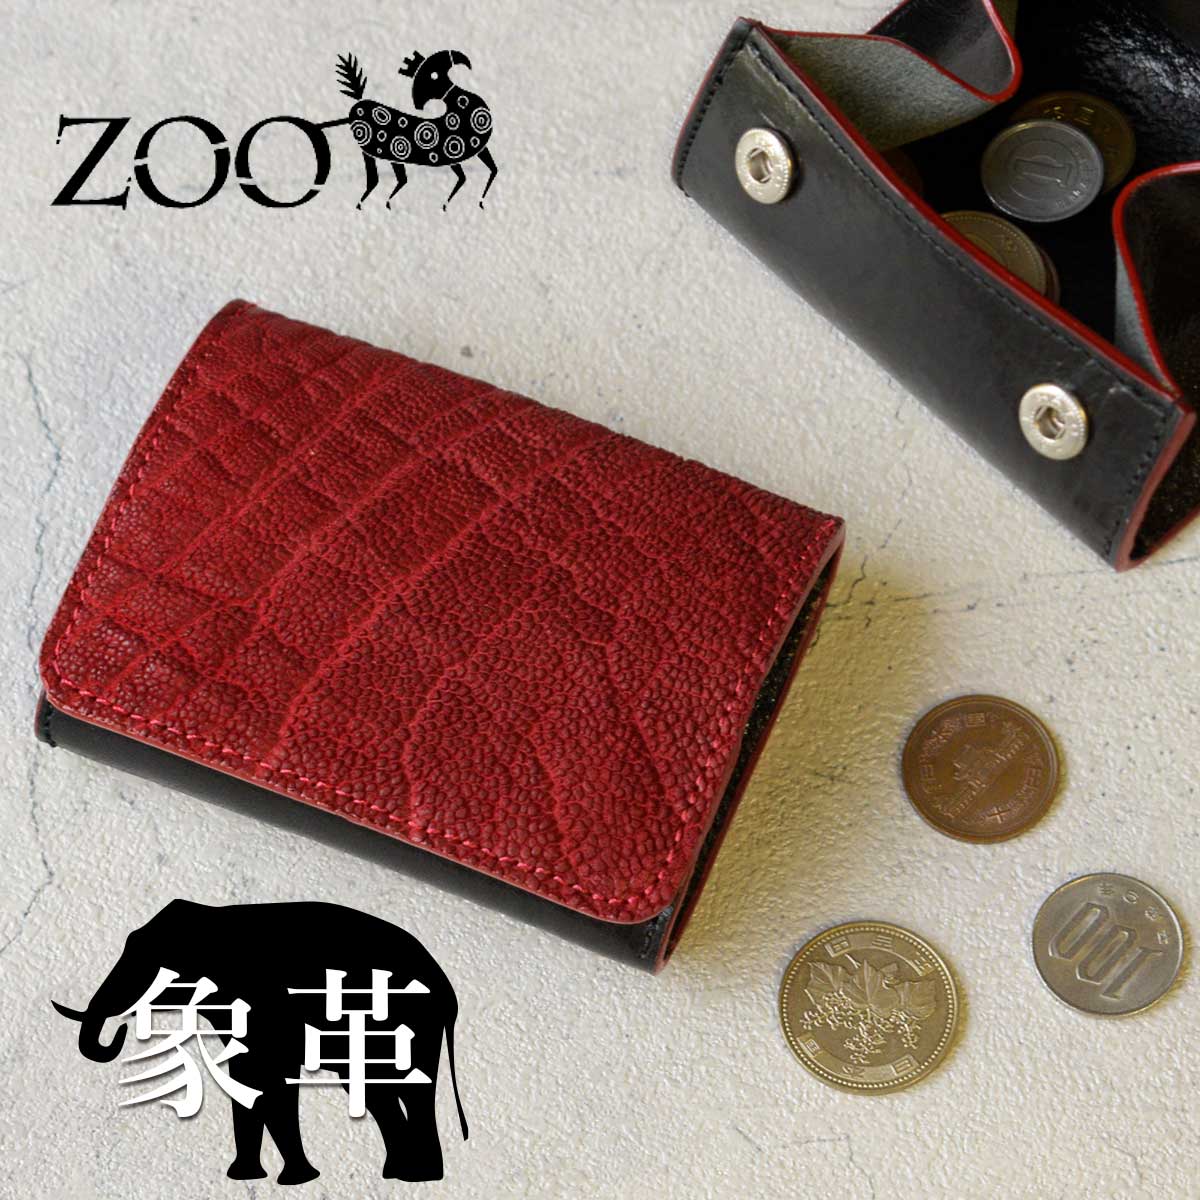 ZOO(ズー) メンズ エレファントレザー 象革 小銭入れ コインケース ダックコインケース14 zcc-030 レッド 